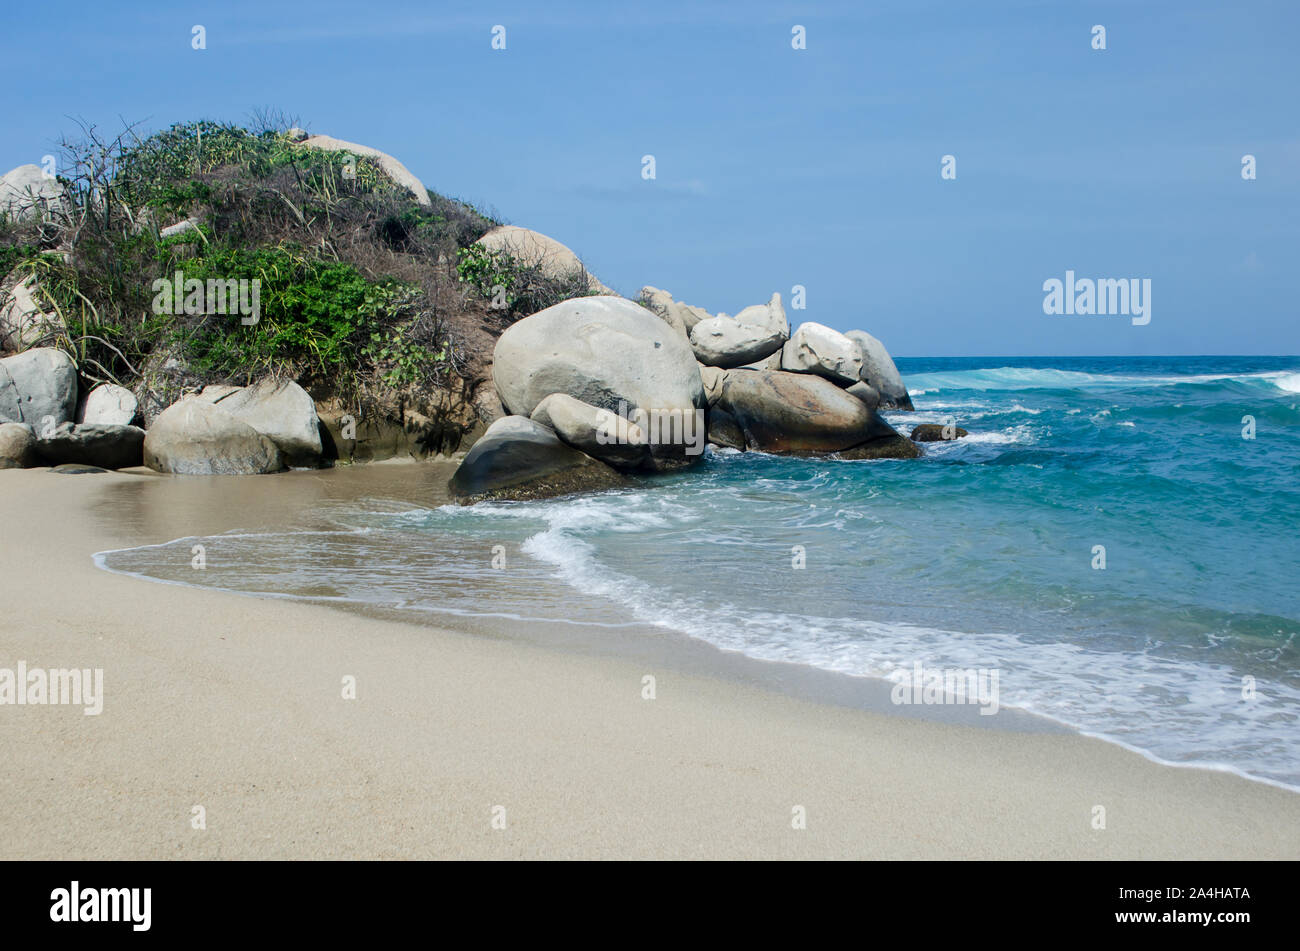 Una bellissima spiaggia di sabbia e il paesaggio roccioso nel Parco Nazionale Tayrona, una area protetta situata nel dipartimento di Magdalena sul lato caraibico della Colombia Foto Stock